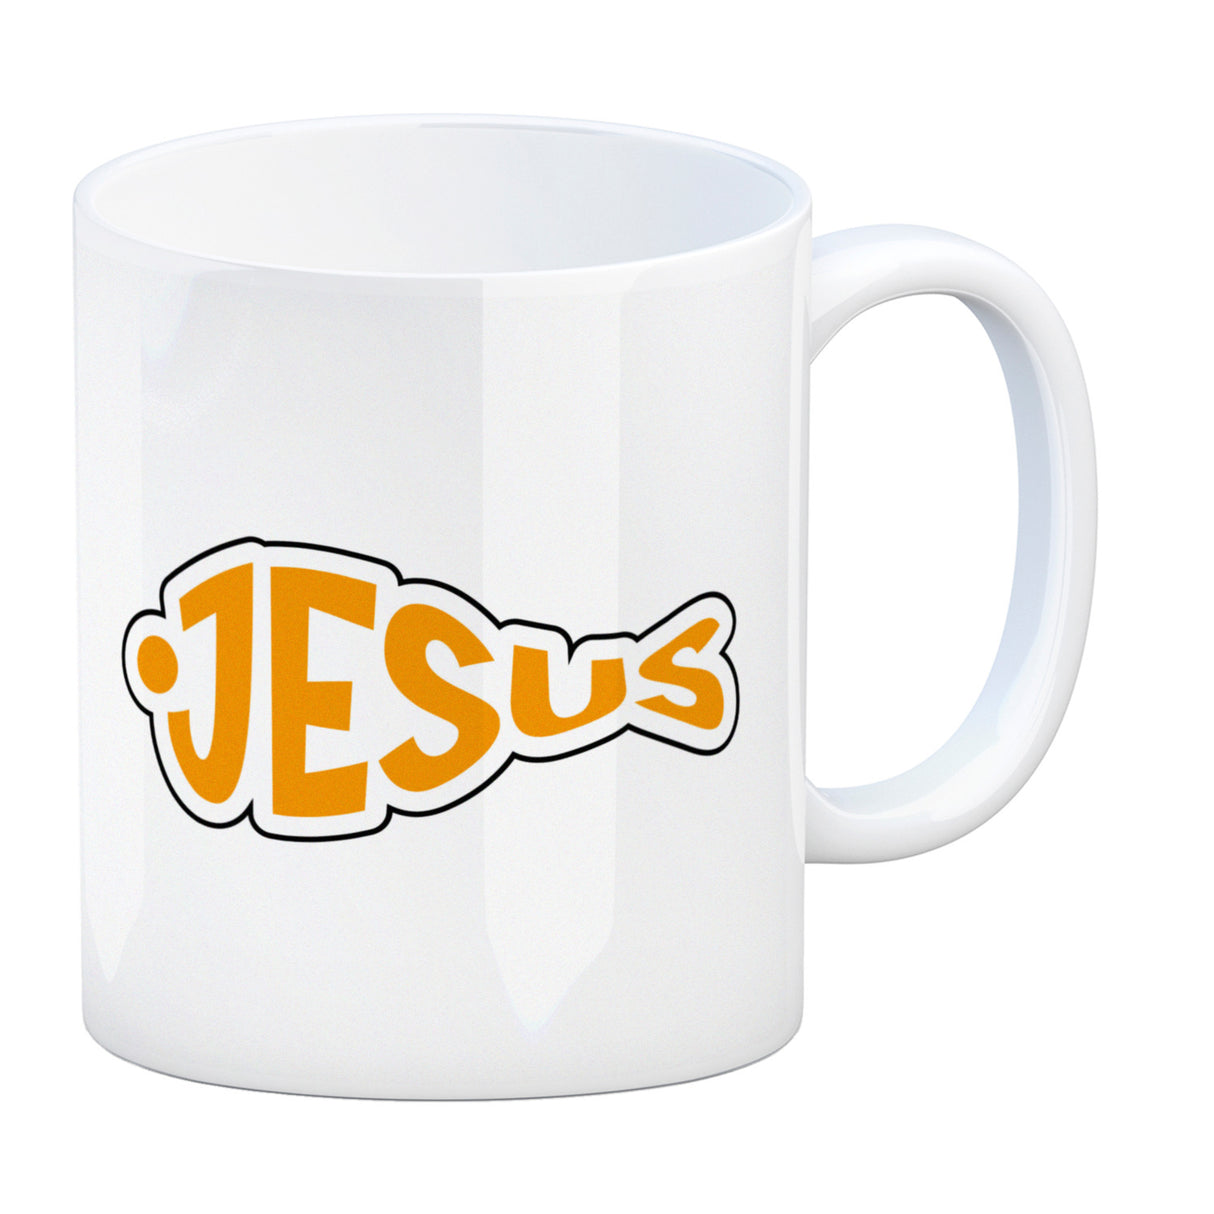 Jesus-Fisch Kaffeebecher für Gläubige